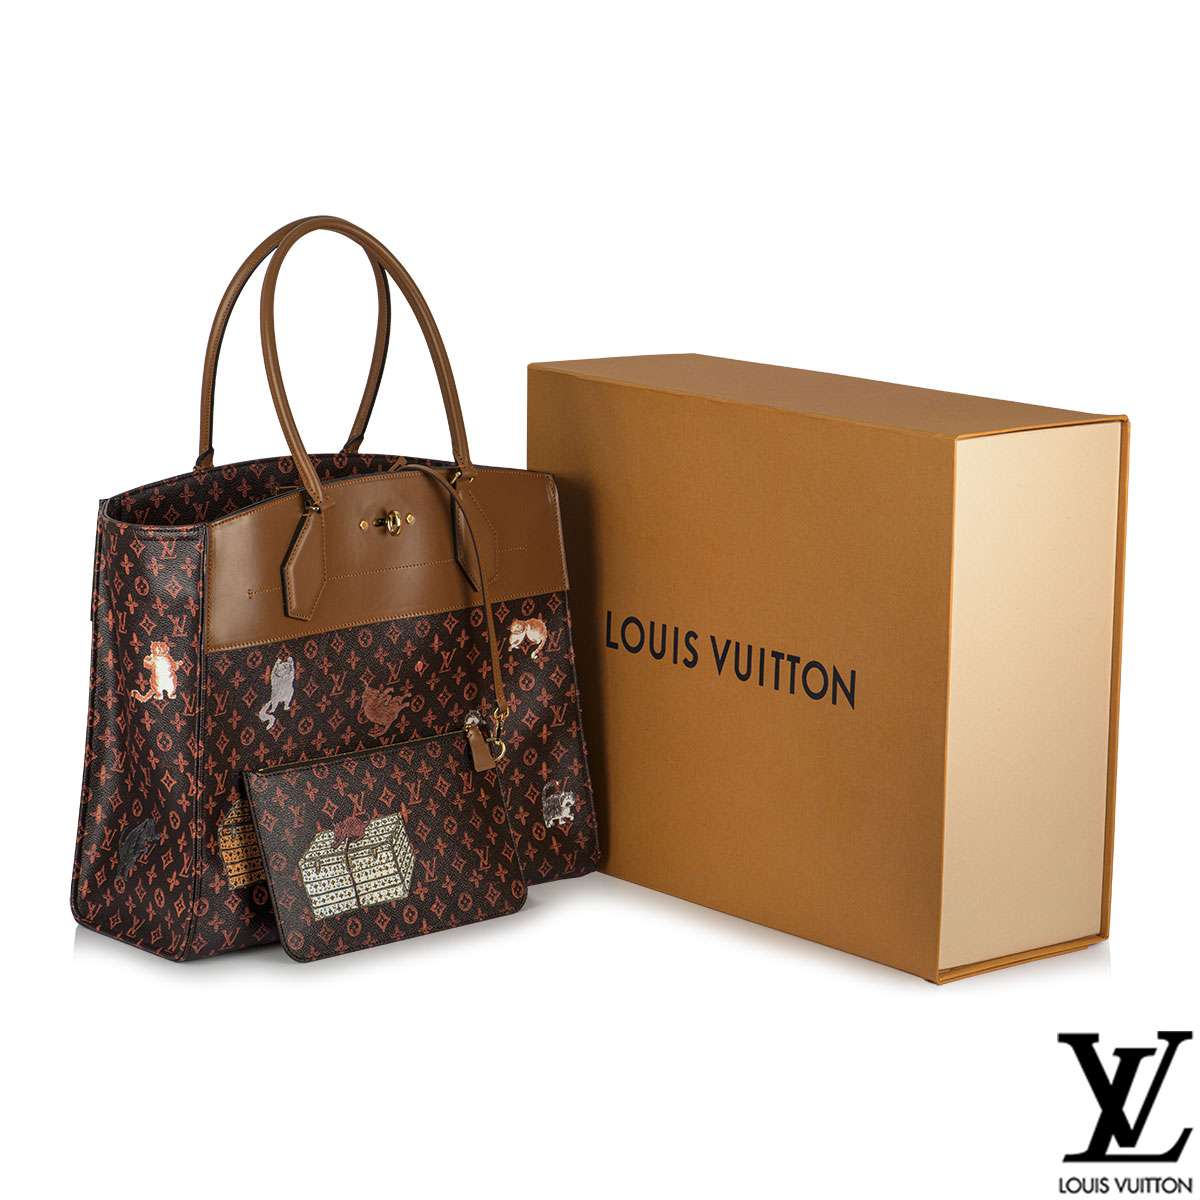 Louis Vuitton X Grace Coddington: Catogram Capsule Collection